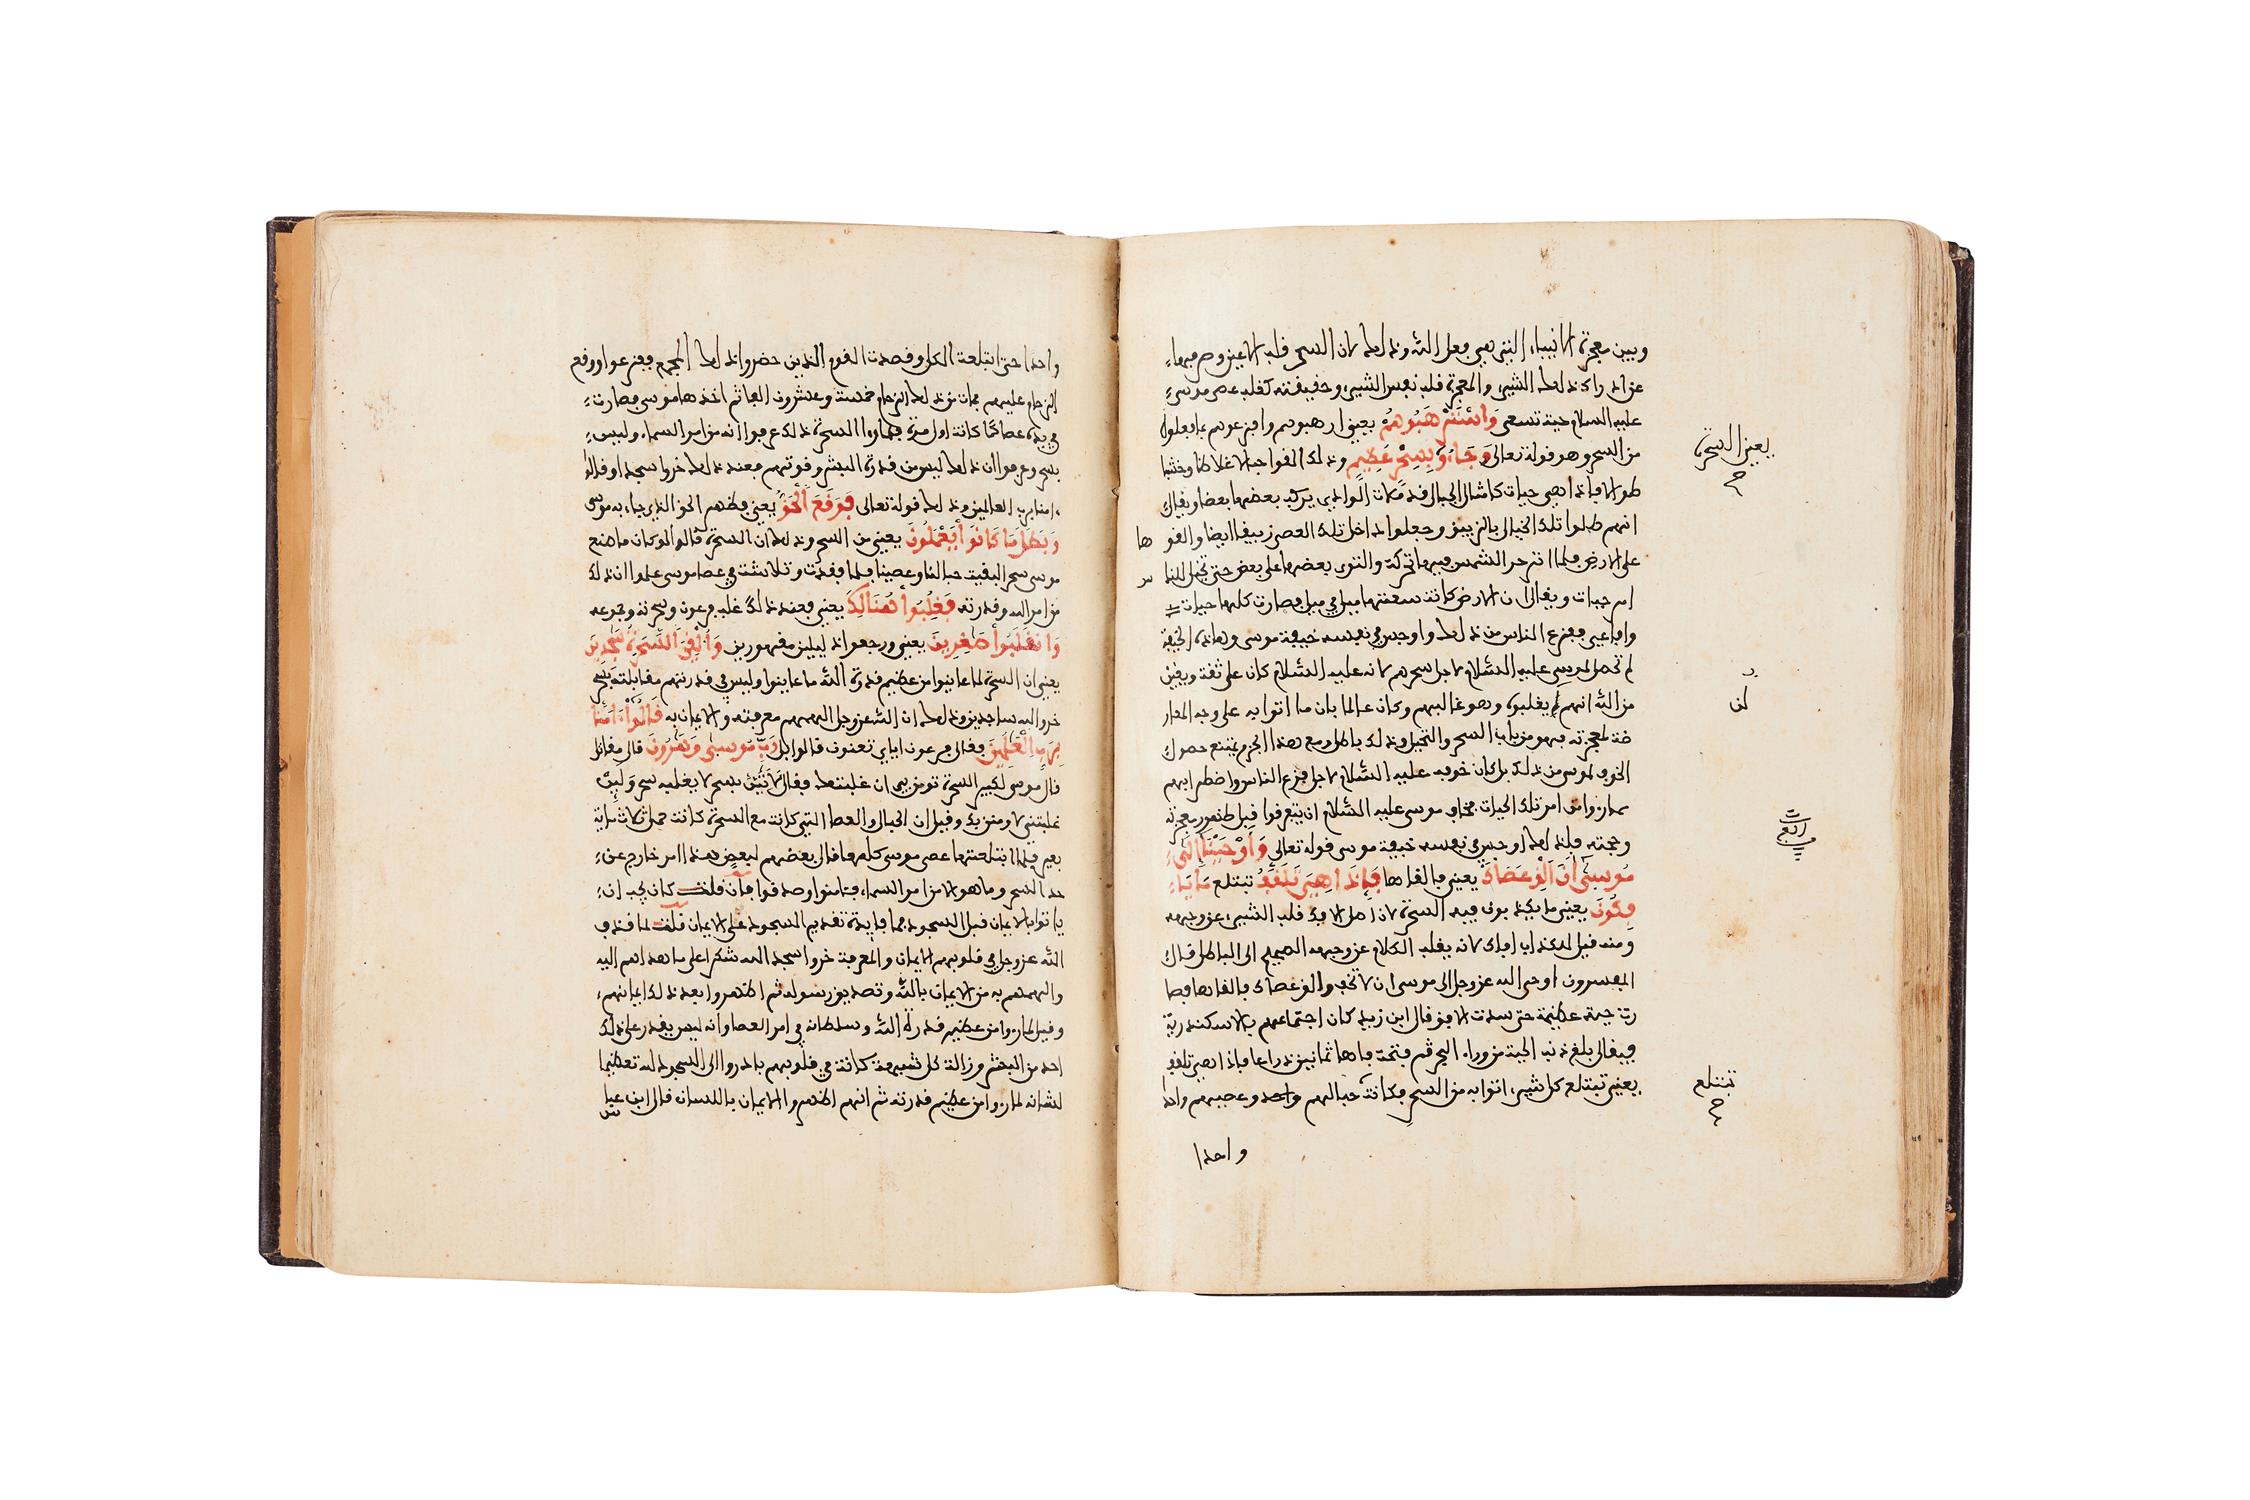 Ɵ Tafsir Libab al-Tawil fi Maani al-Tanzil, manuscript on paper [Granada, 890 AH (1485 AD)]